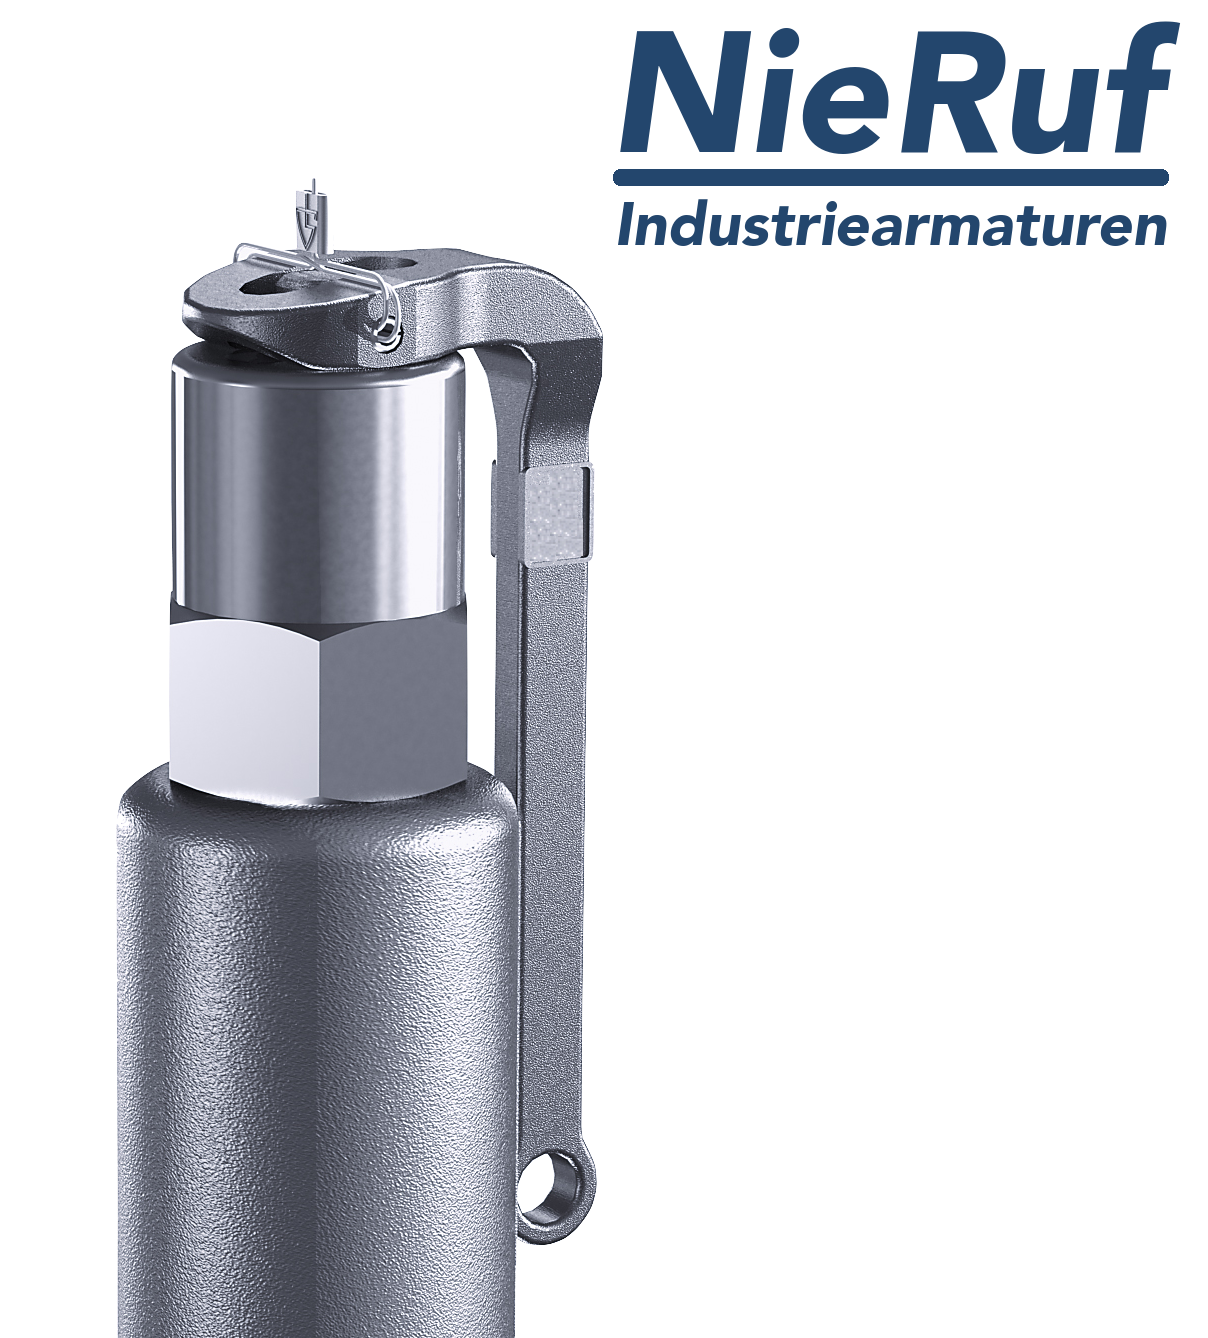 valvola di sicurezza 1 1/2" x 2" F SV05 fluidi liquidi neutri, acciaio inox NBR, con leva